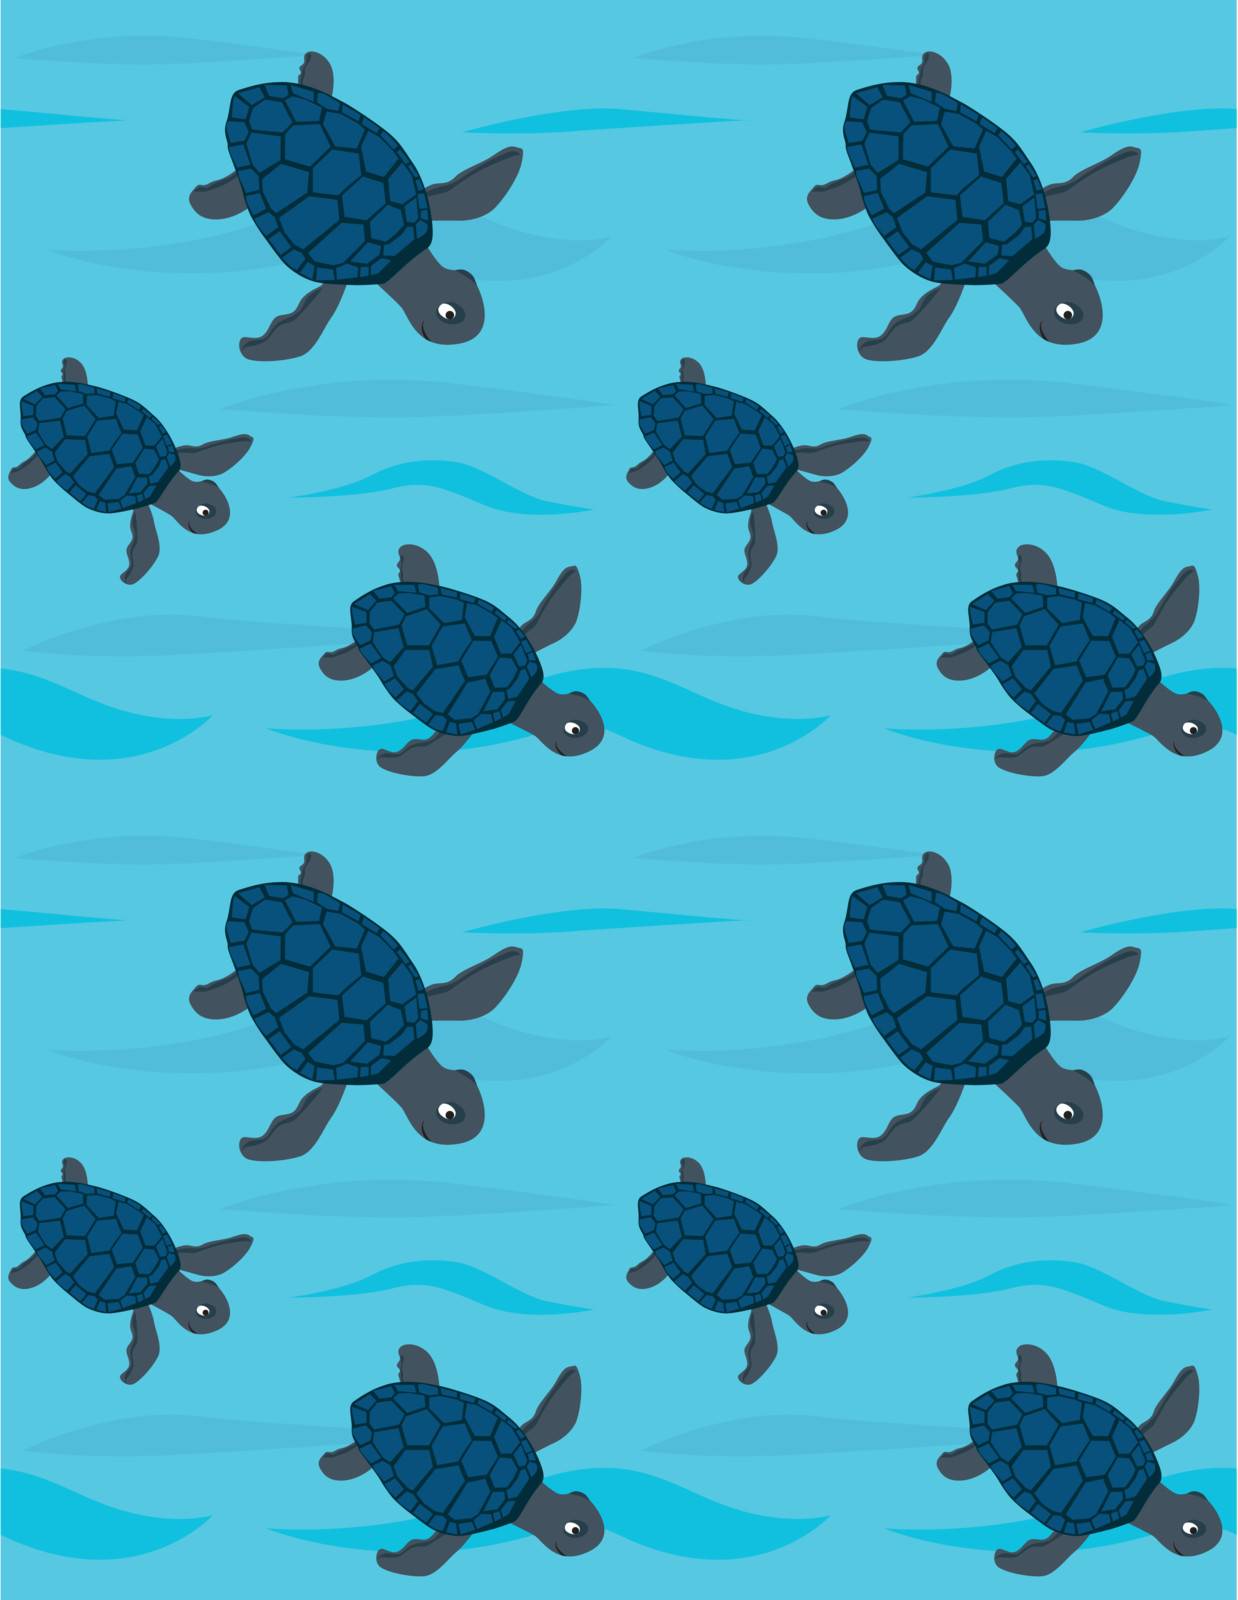 Sea turtles by nahhan